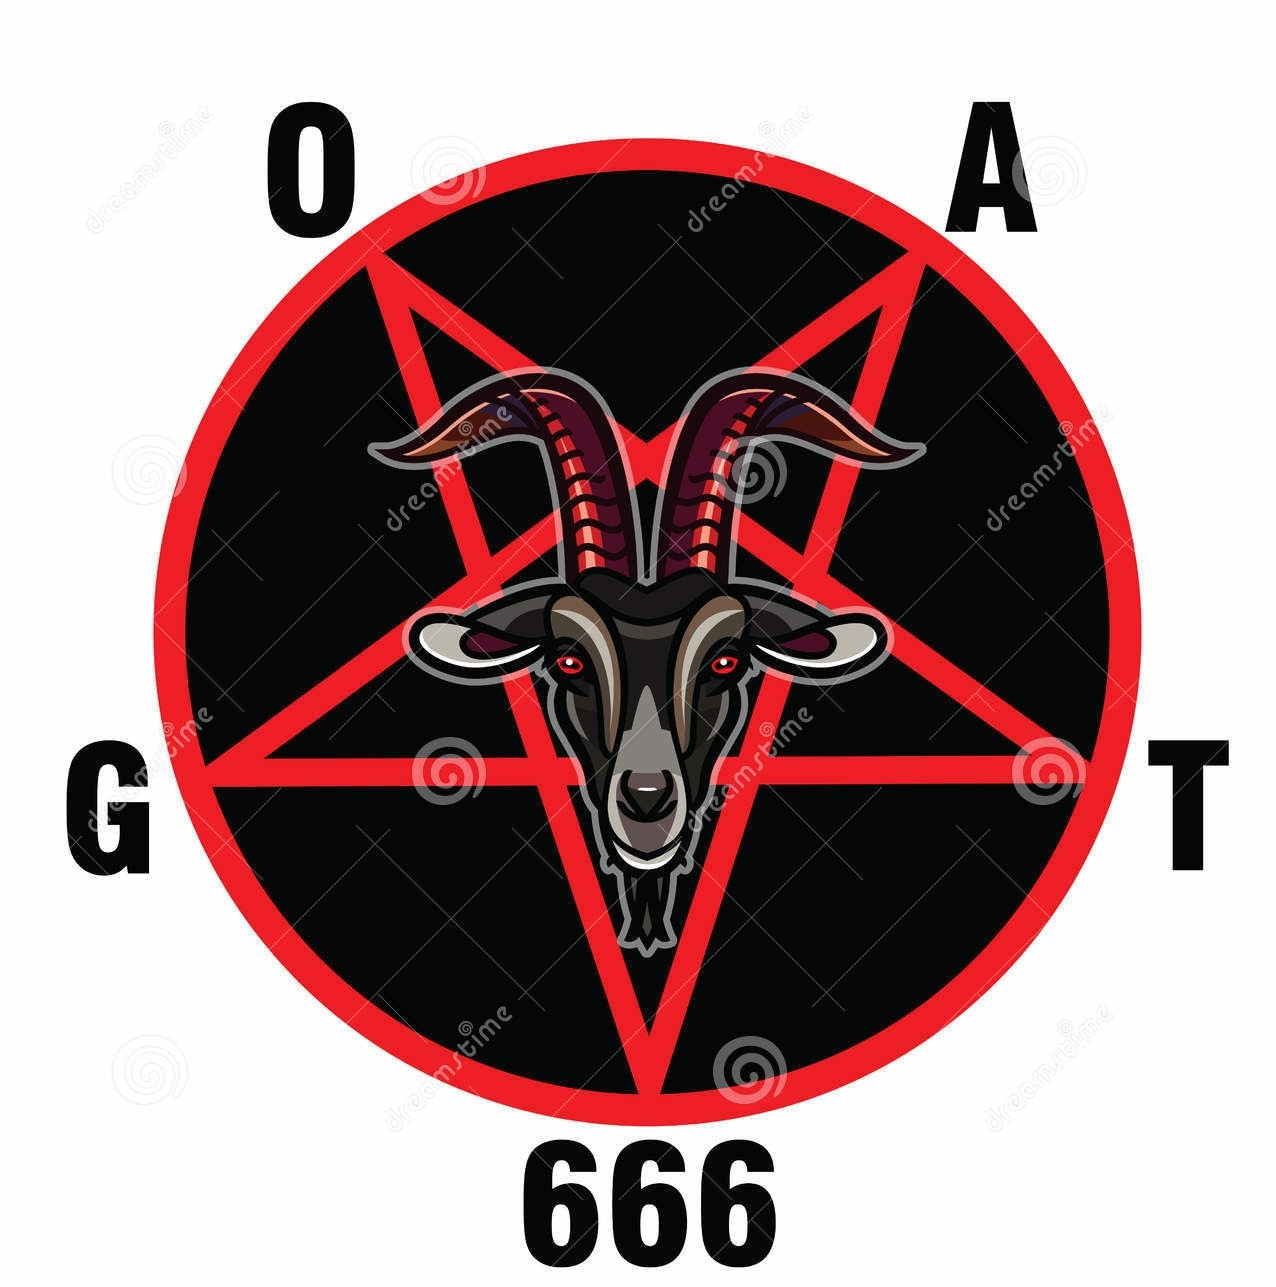 pentagone-étoilé-avec-le-démon-baphomet-tête-satanique-de-chèvre-95735901 (2).jpg